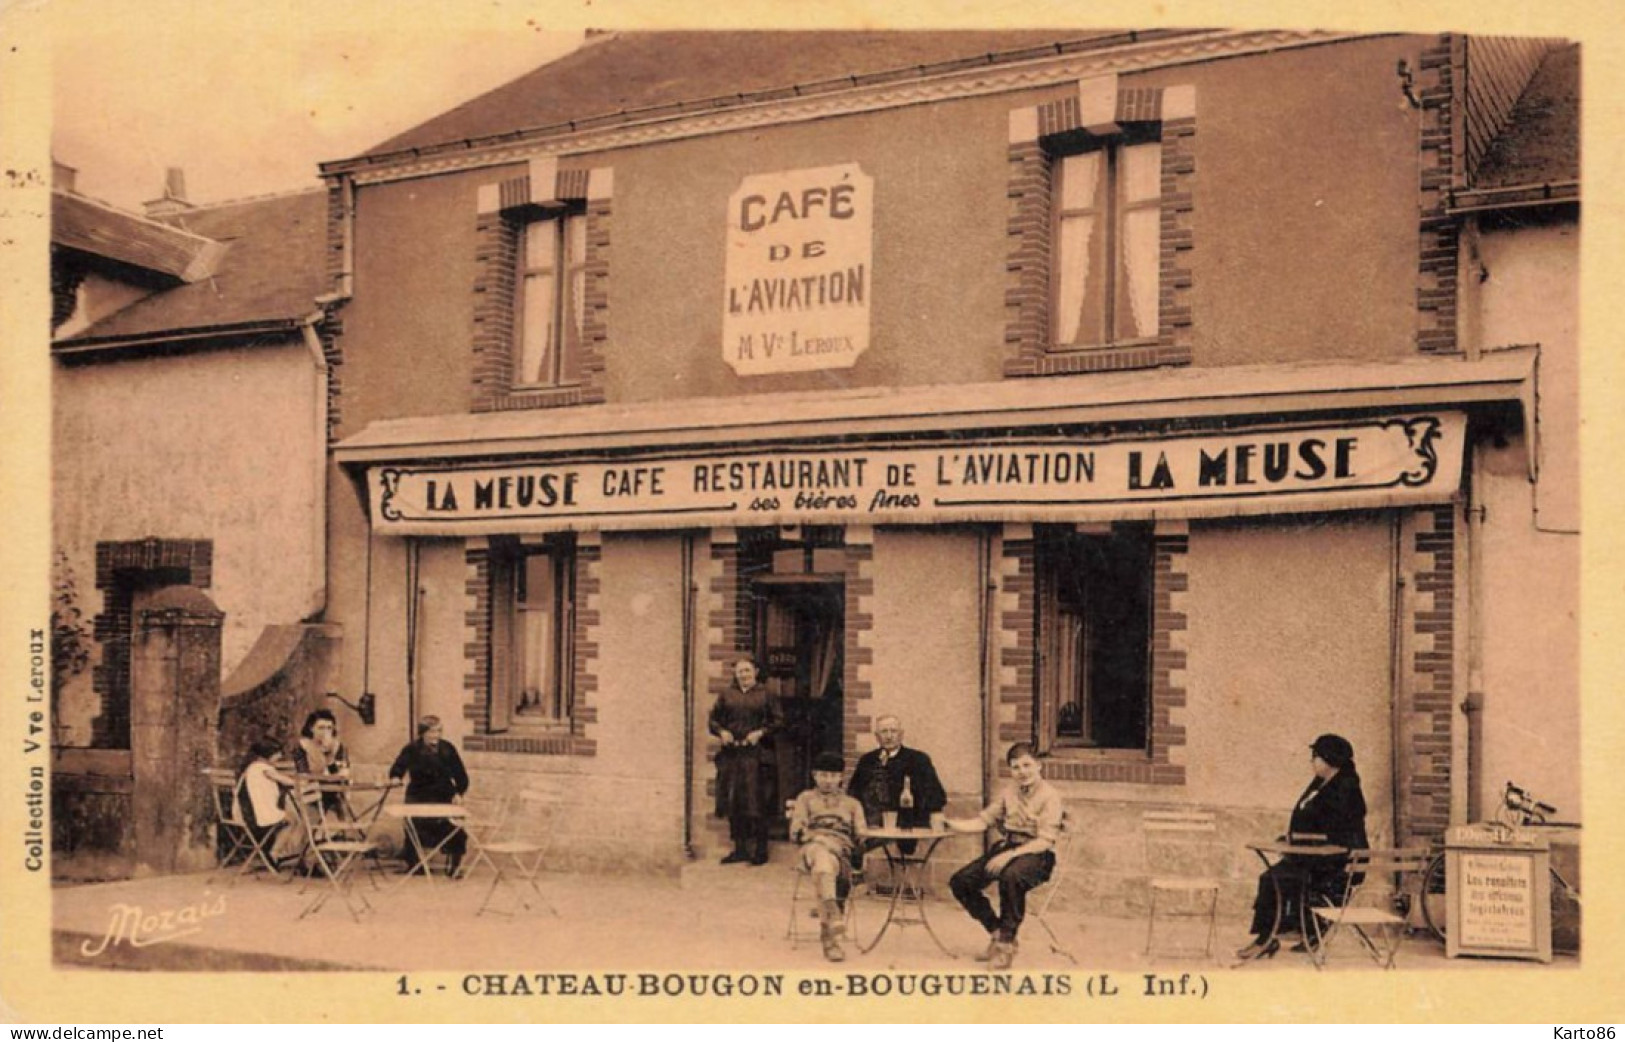 Bouguenais , Près Nantes * Chateau Bougon * Café De L'Aviation Restaurant * Bière LA MEUSE * Villageois Commerce - Bouguenais